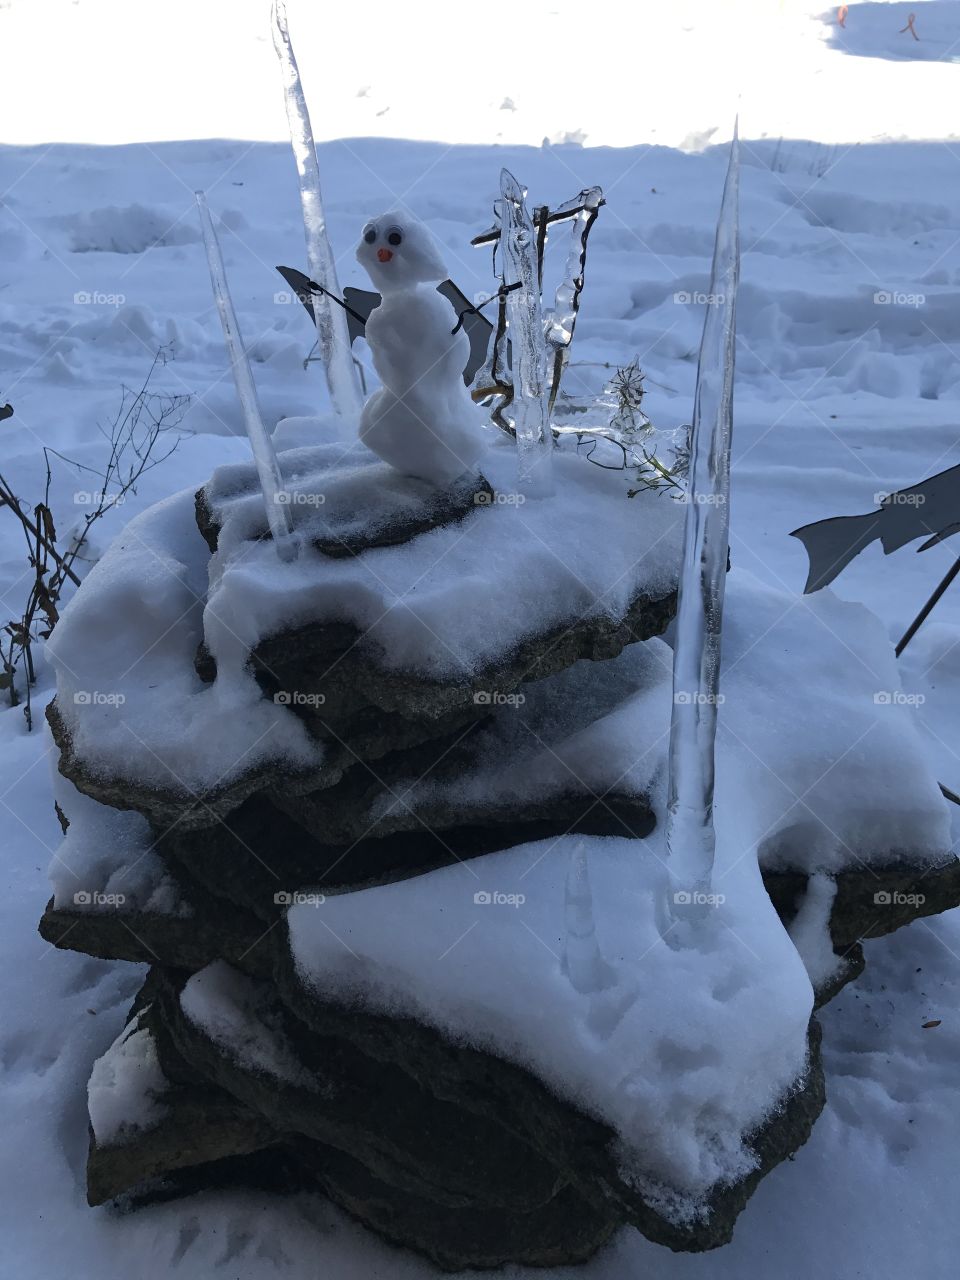 Ice land snowman 